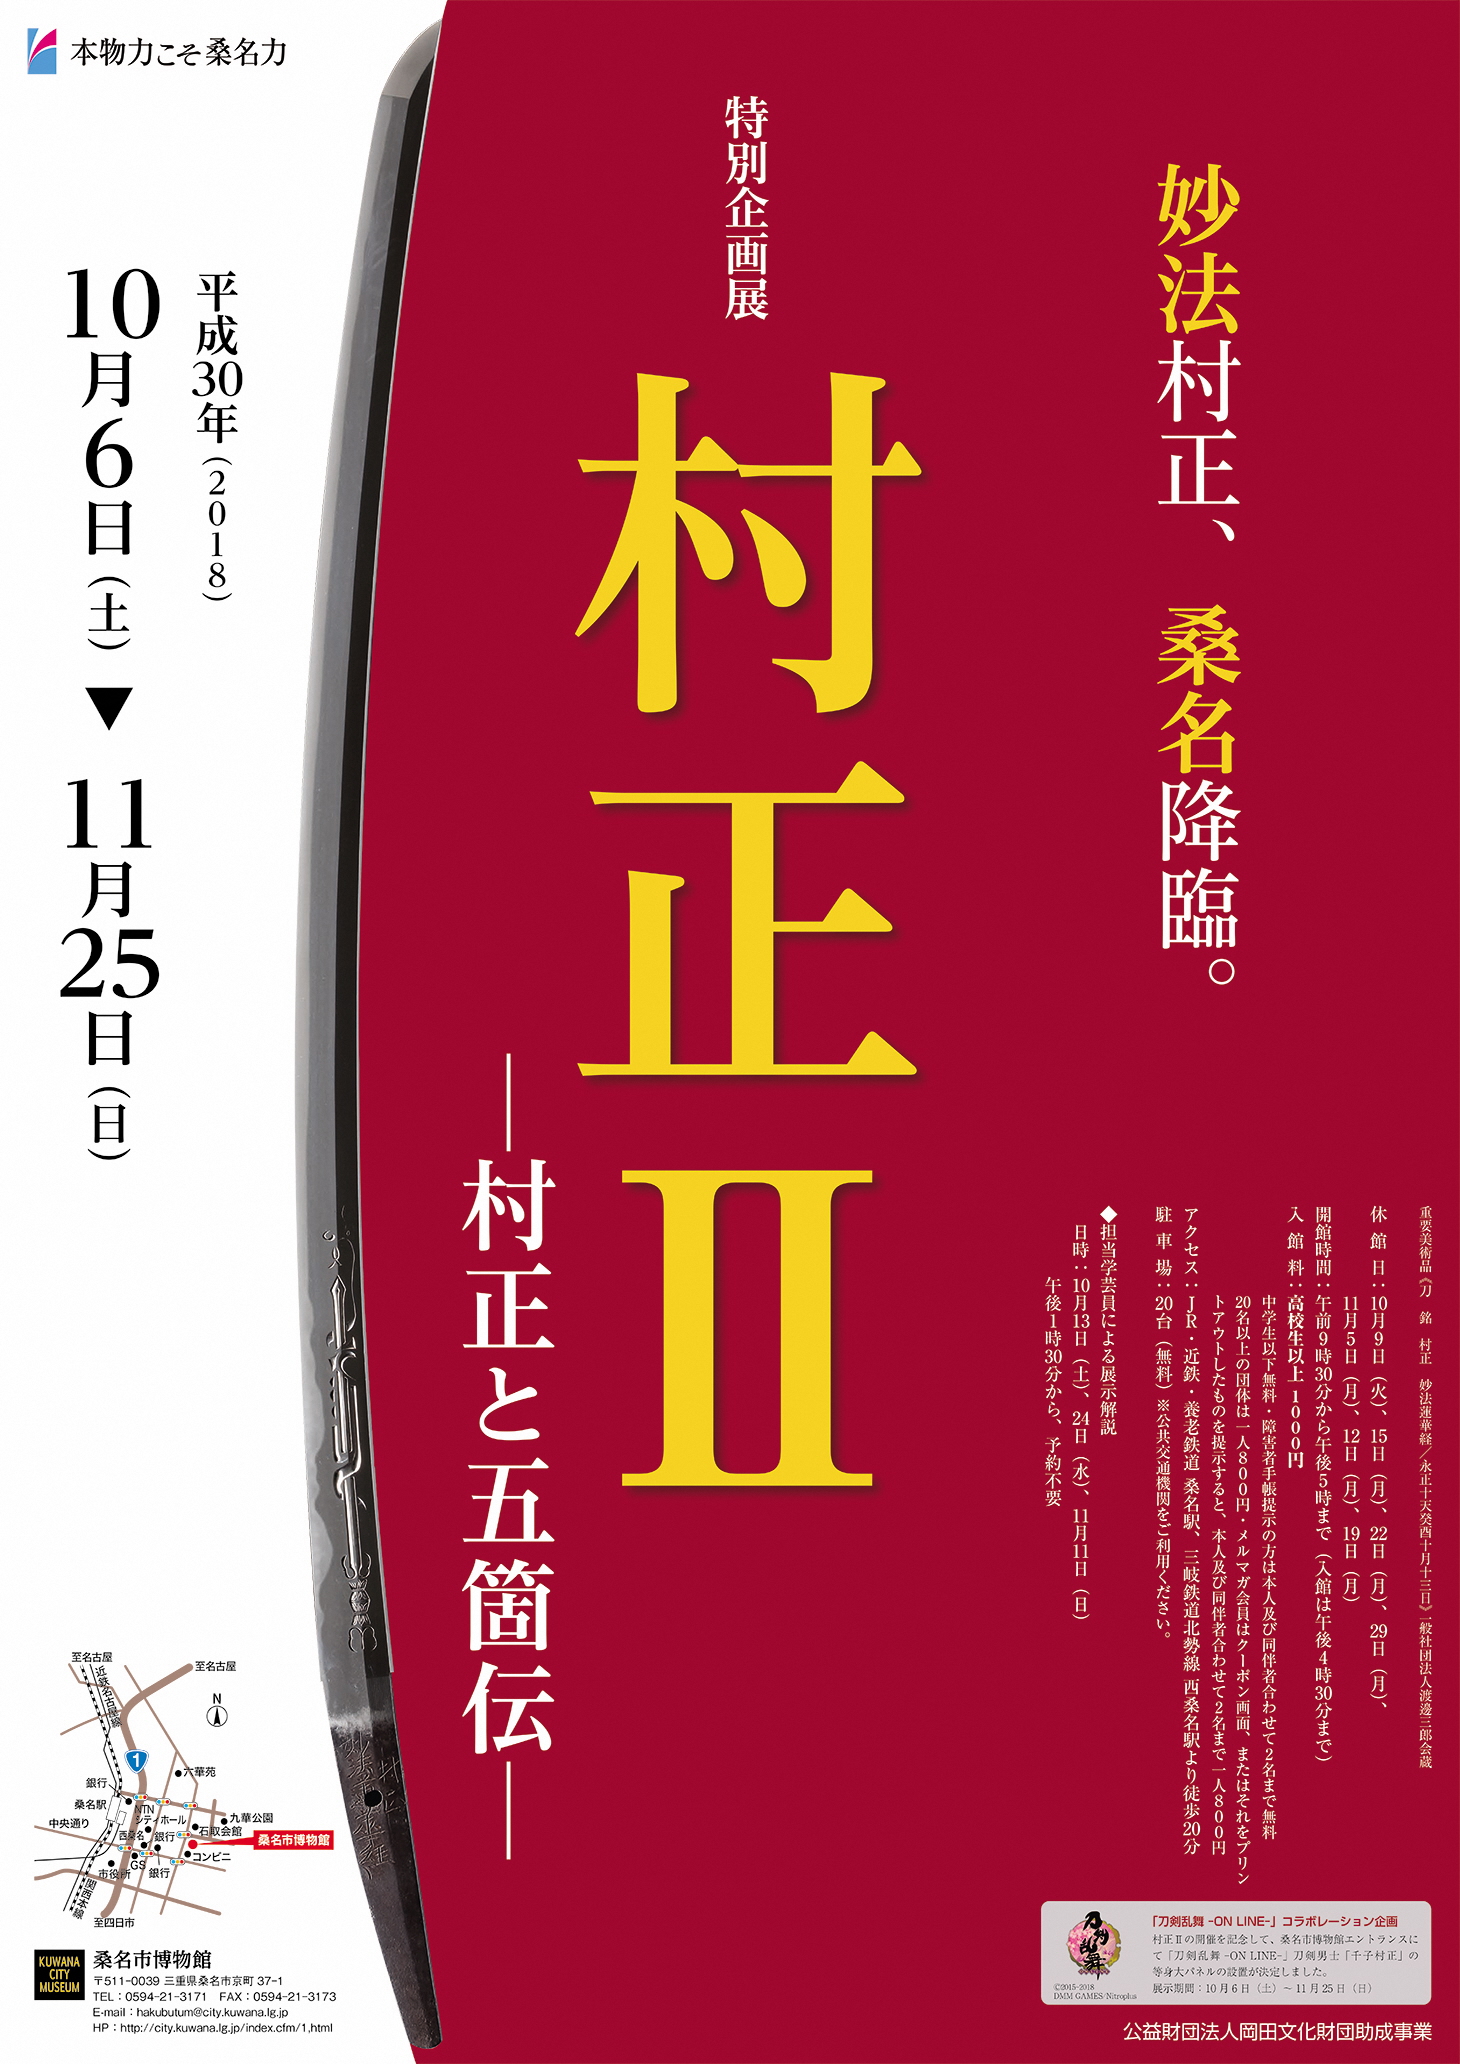 三重県桑名市で開催中の特別展 村正 終了迫る 株式会社ポニーキャニオンのプレスリリース